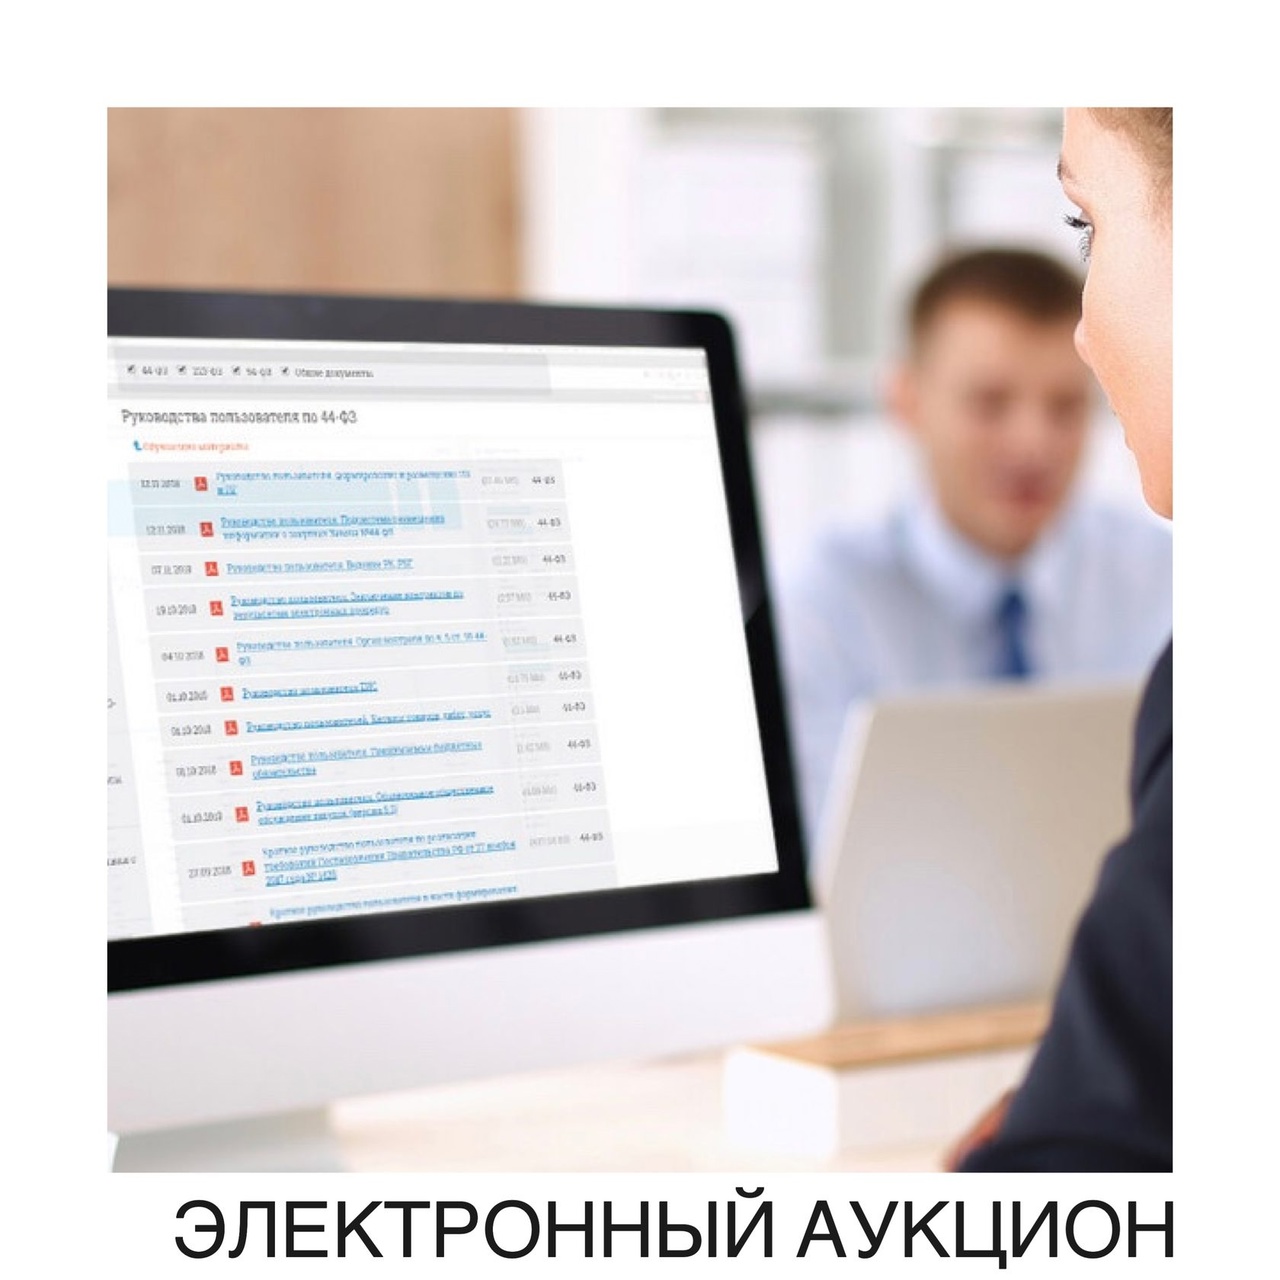 Комитет по управлению имуществом города Димитровграда (организатор торгов) сообщает о проведении электронного аукциона на право заключения договора аренды.